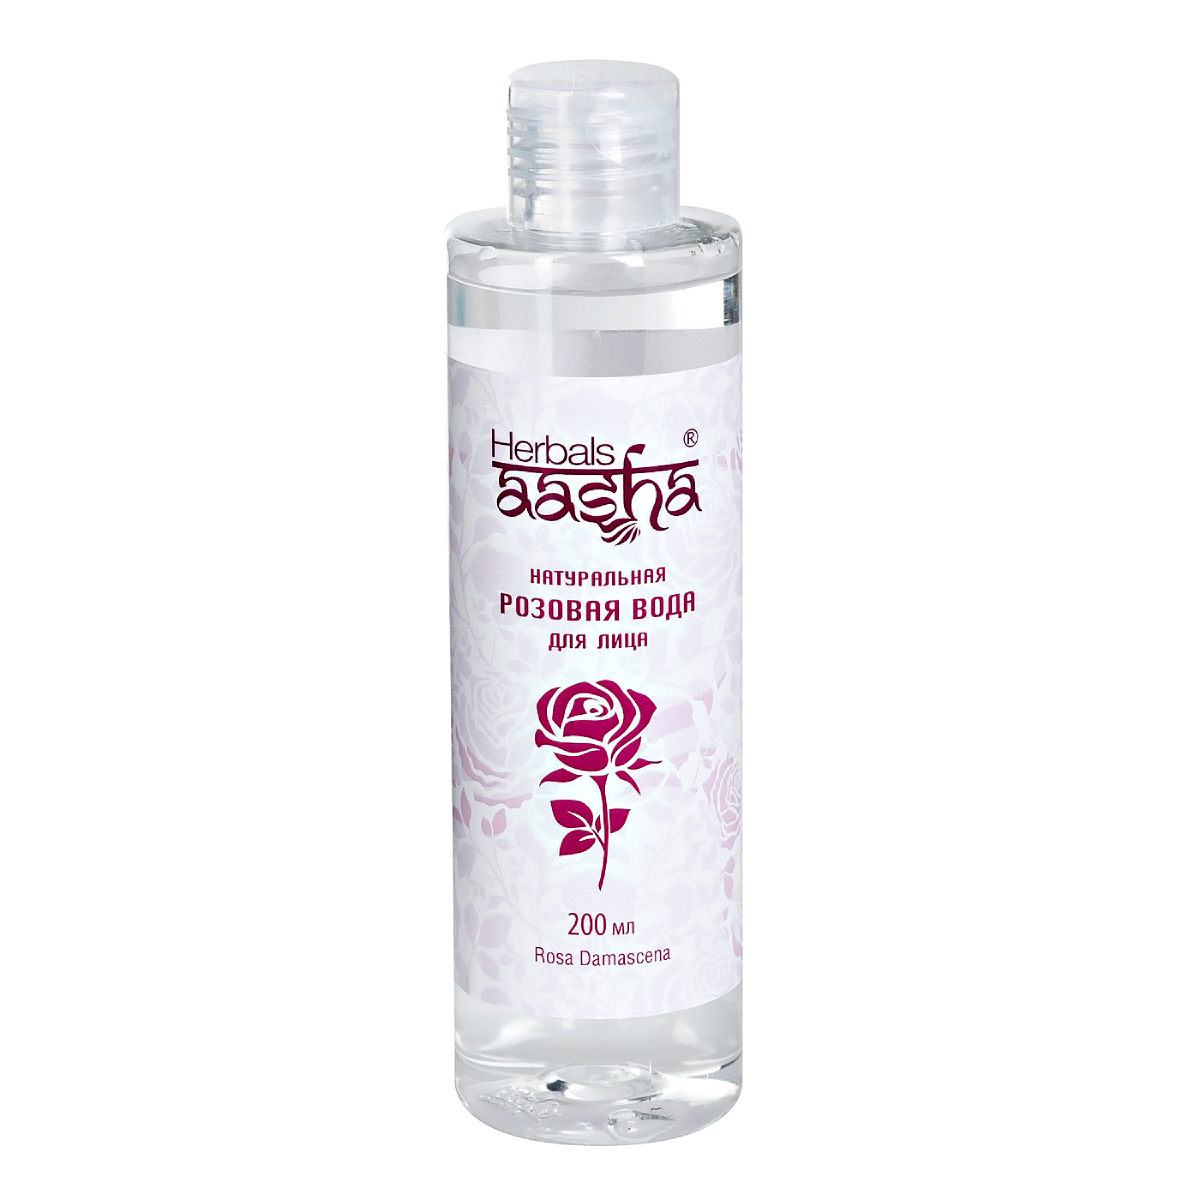 Натуральная розовая вода Aasha Herbals для лица, 200 мл aasha herbals очная вода нероли 100